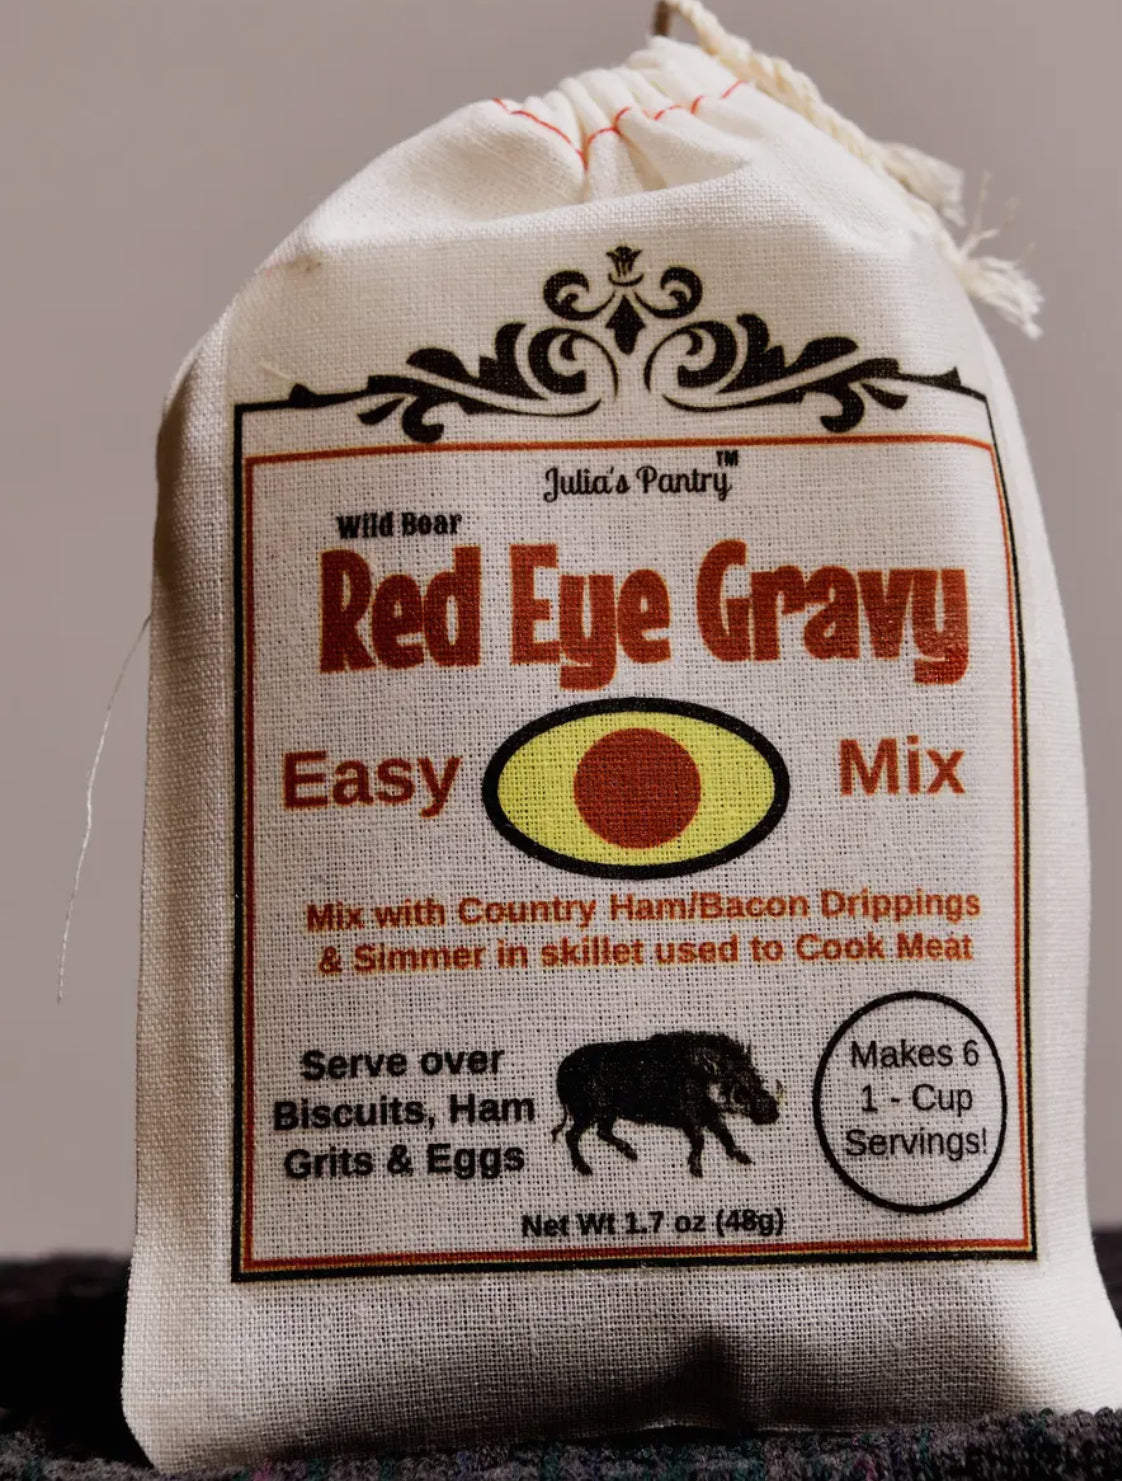 Red Eye Gravy Mix